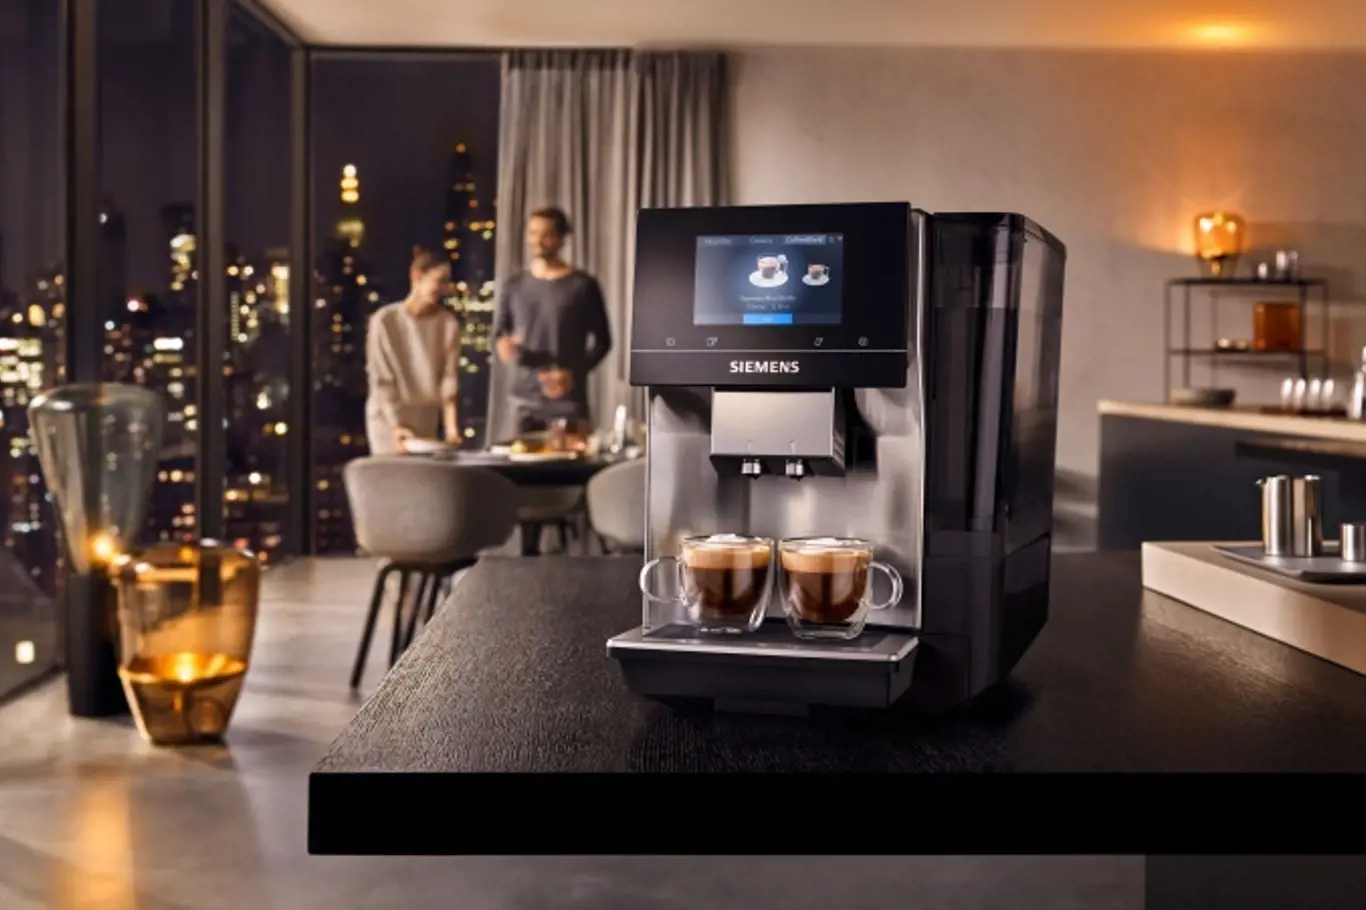 S novým kávovarem TP705R01 podniknete voňavou cestu kolem světa, jen z pohodlí domova.